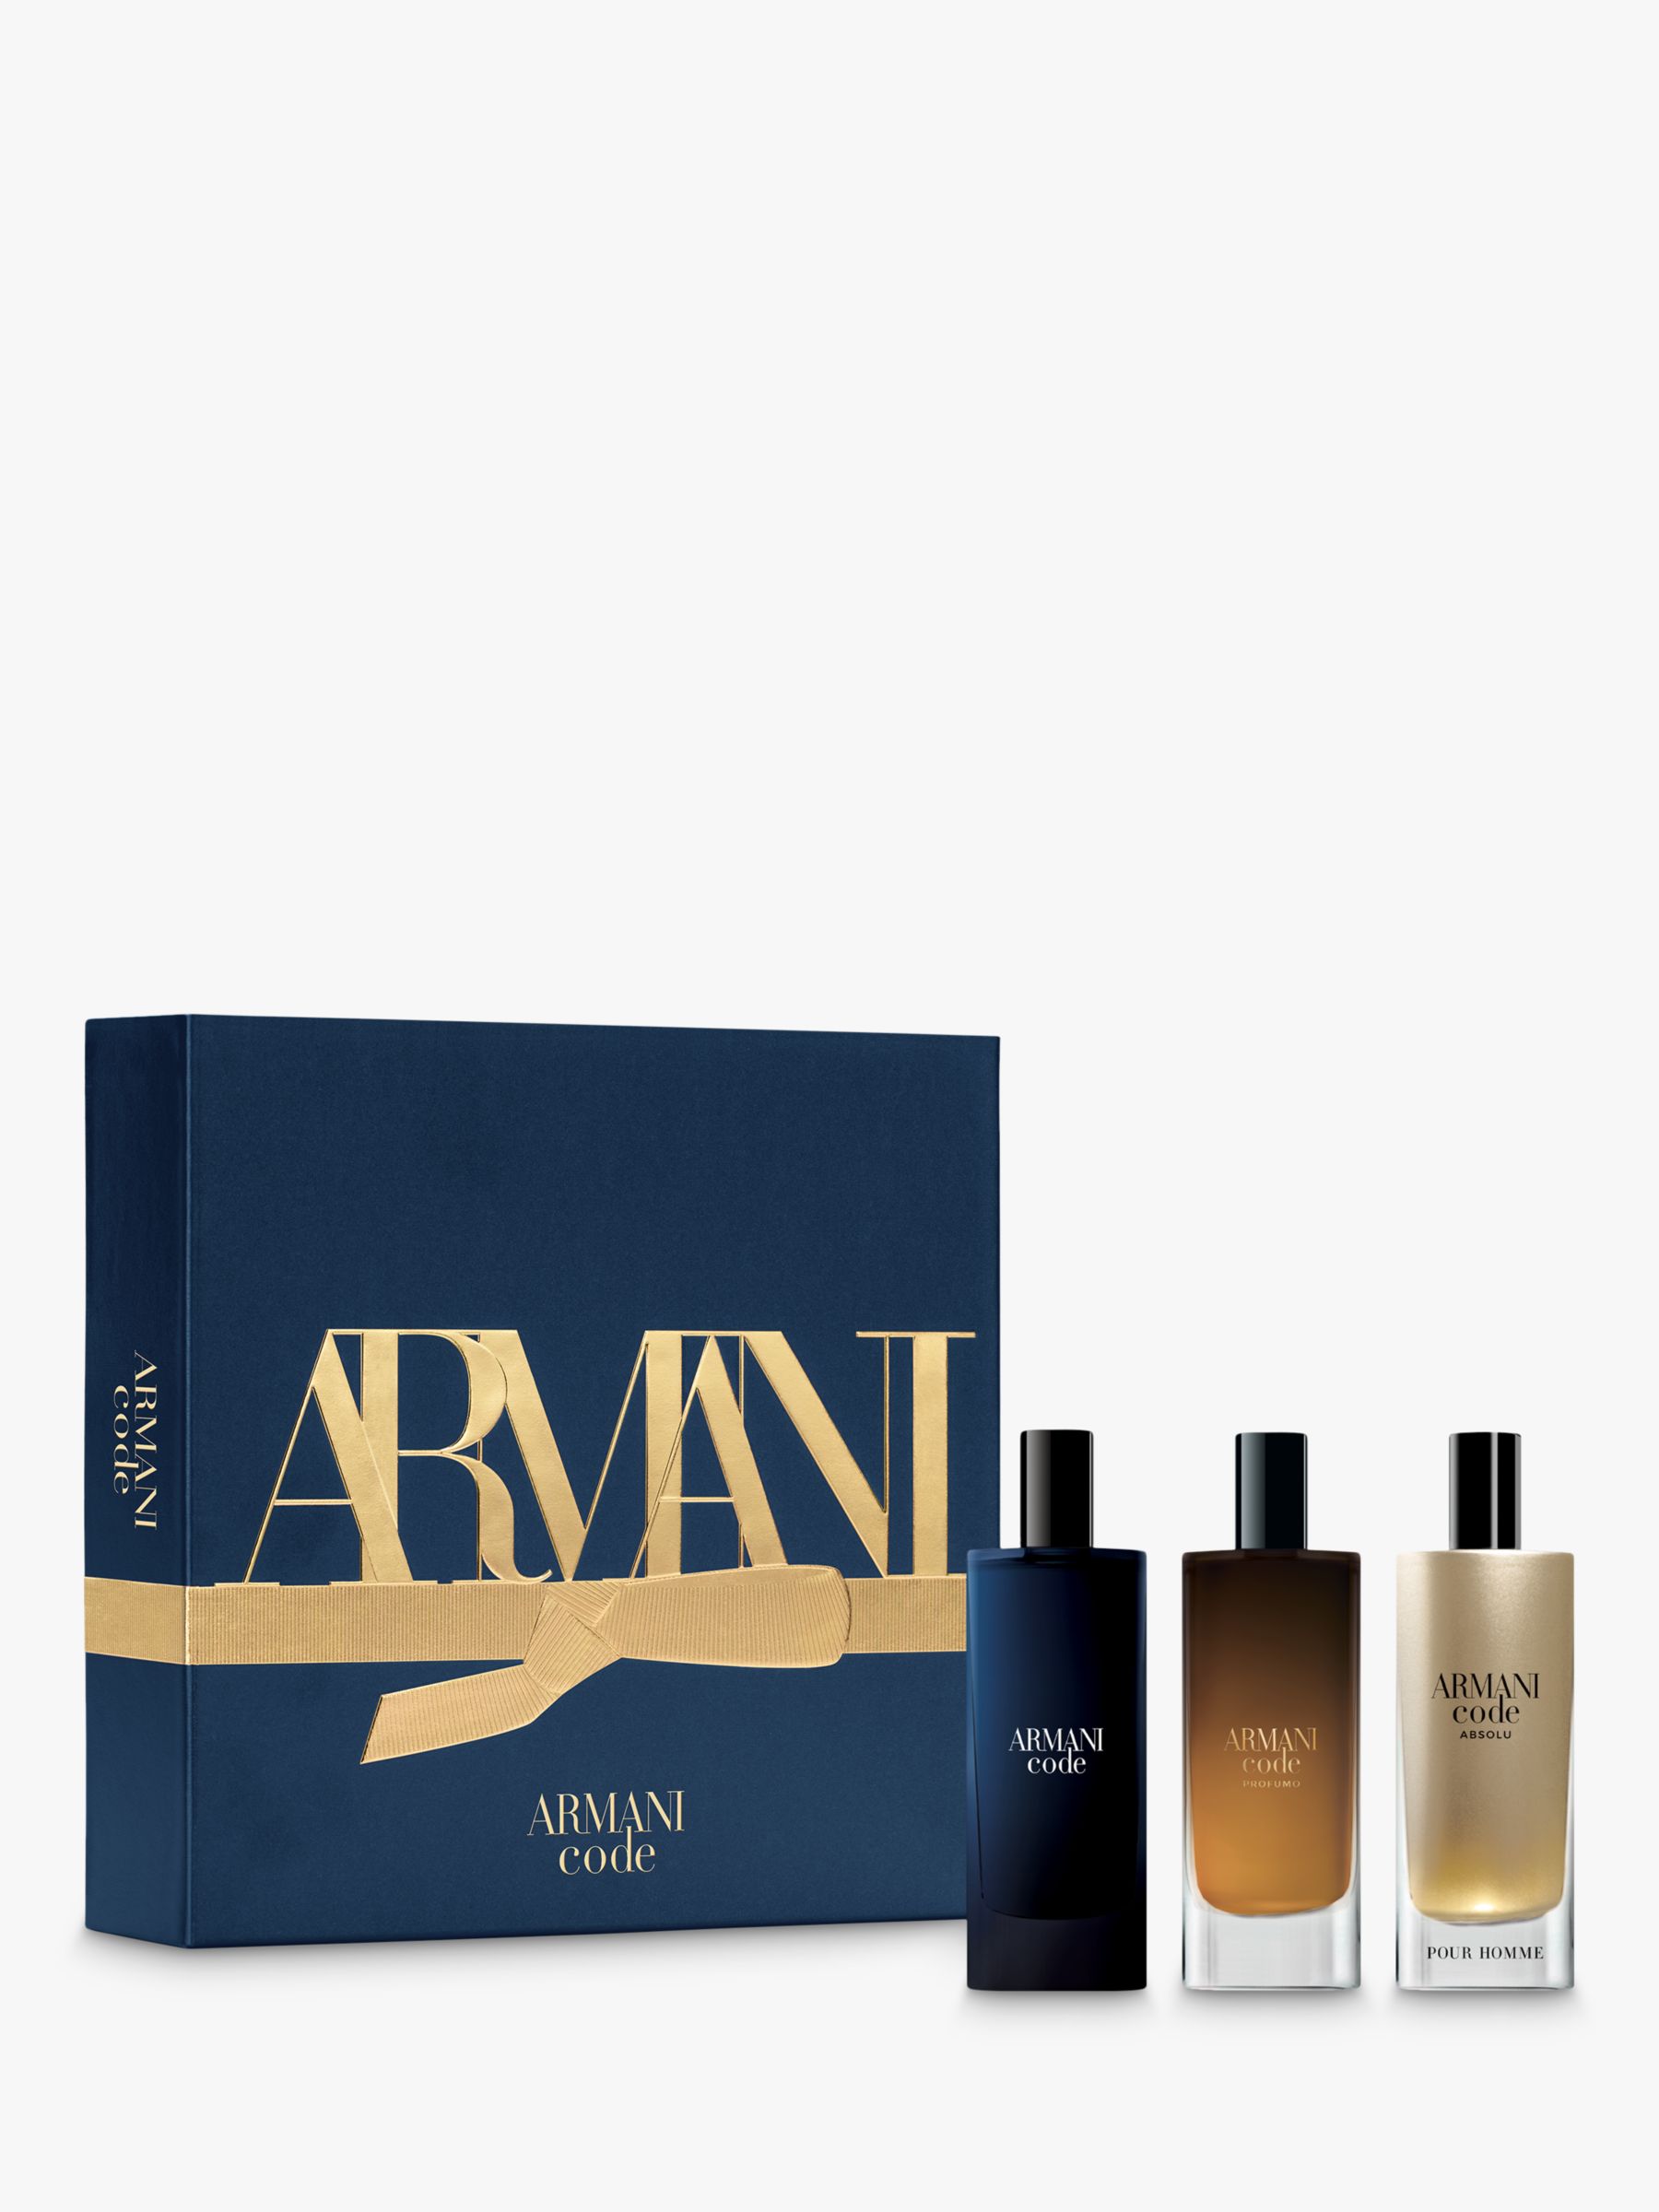 Giorgio Armani Armani Code Men's Gift Set